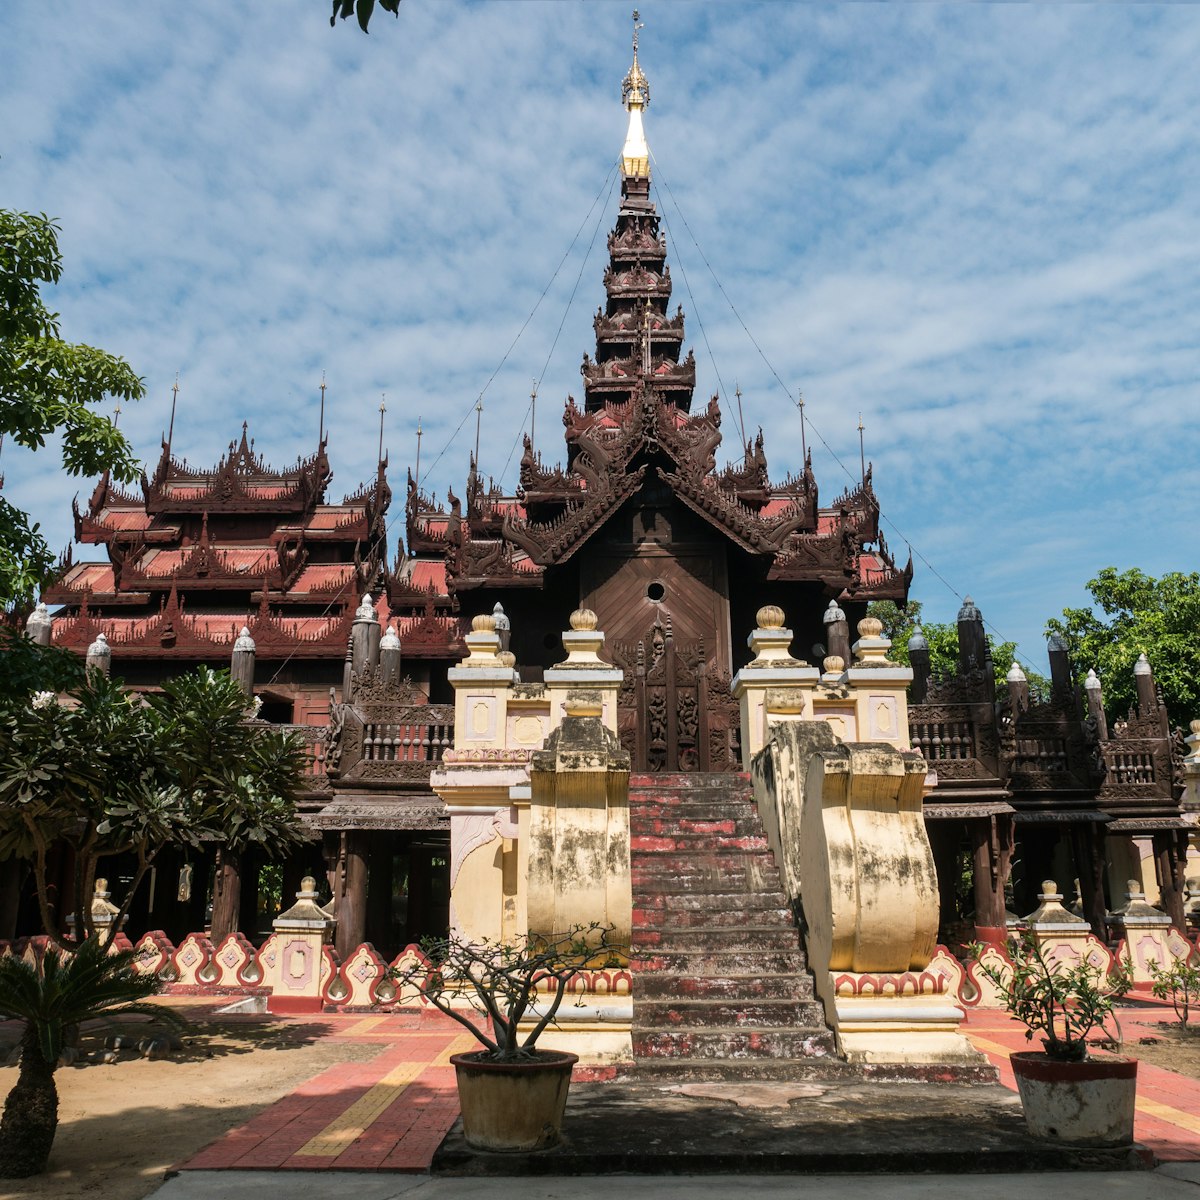 The Shwe In Bin Monastery, the old teakwood sculpture temple in Mandalay, Myanmar.